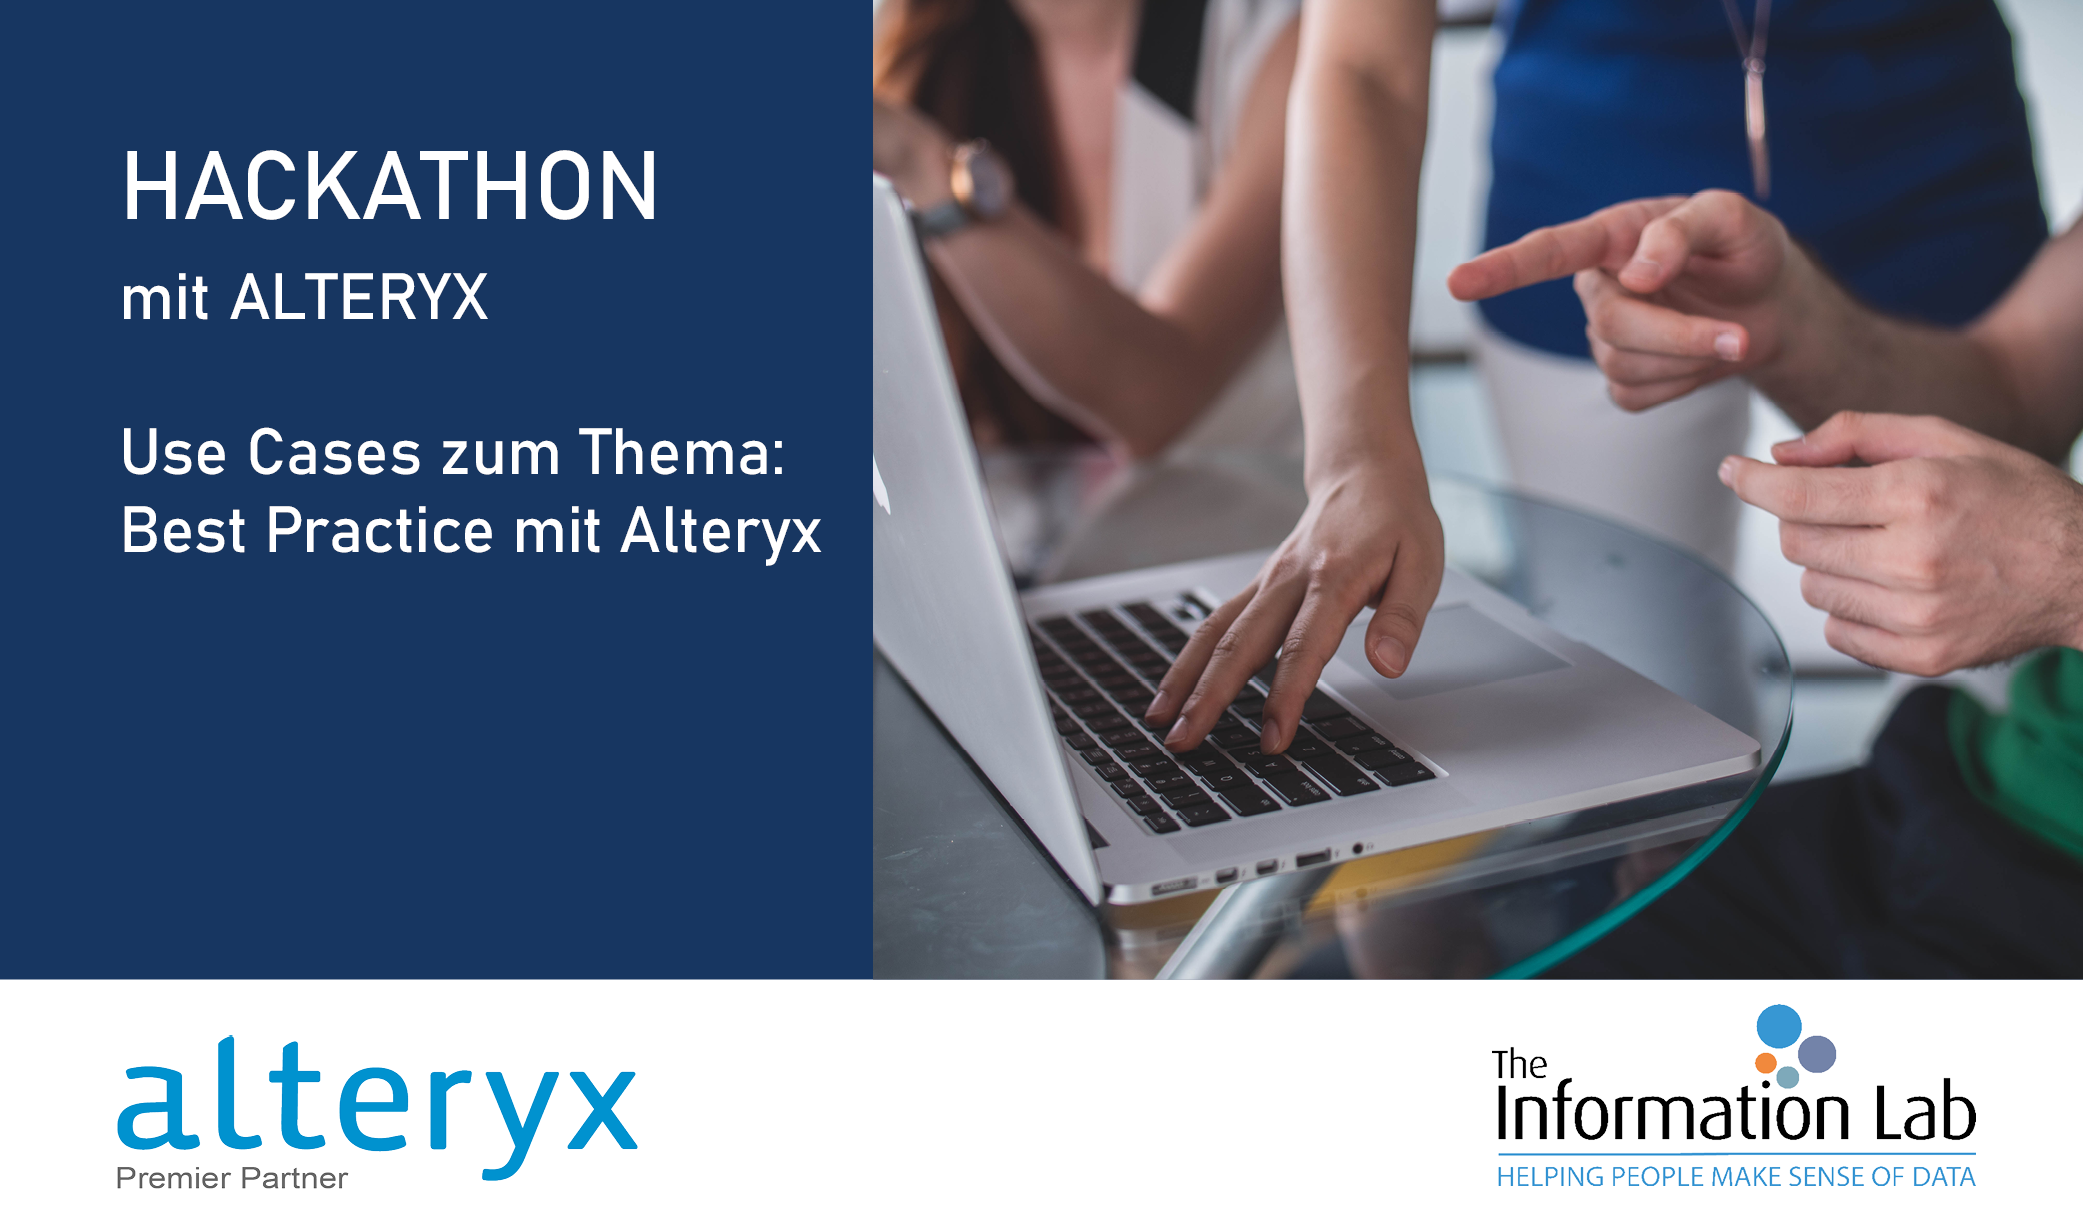 Datenanalyse im Fokus – Erfolgreicher Hackathon mit Alteryx bei The Information Lab